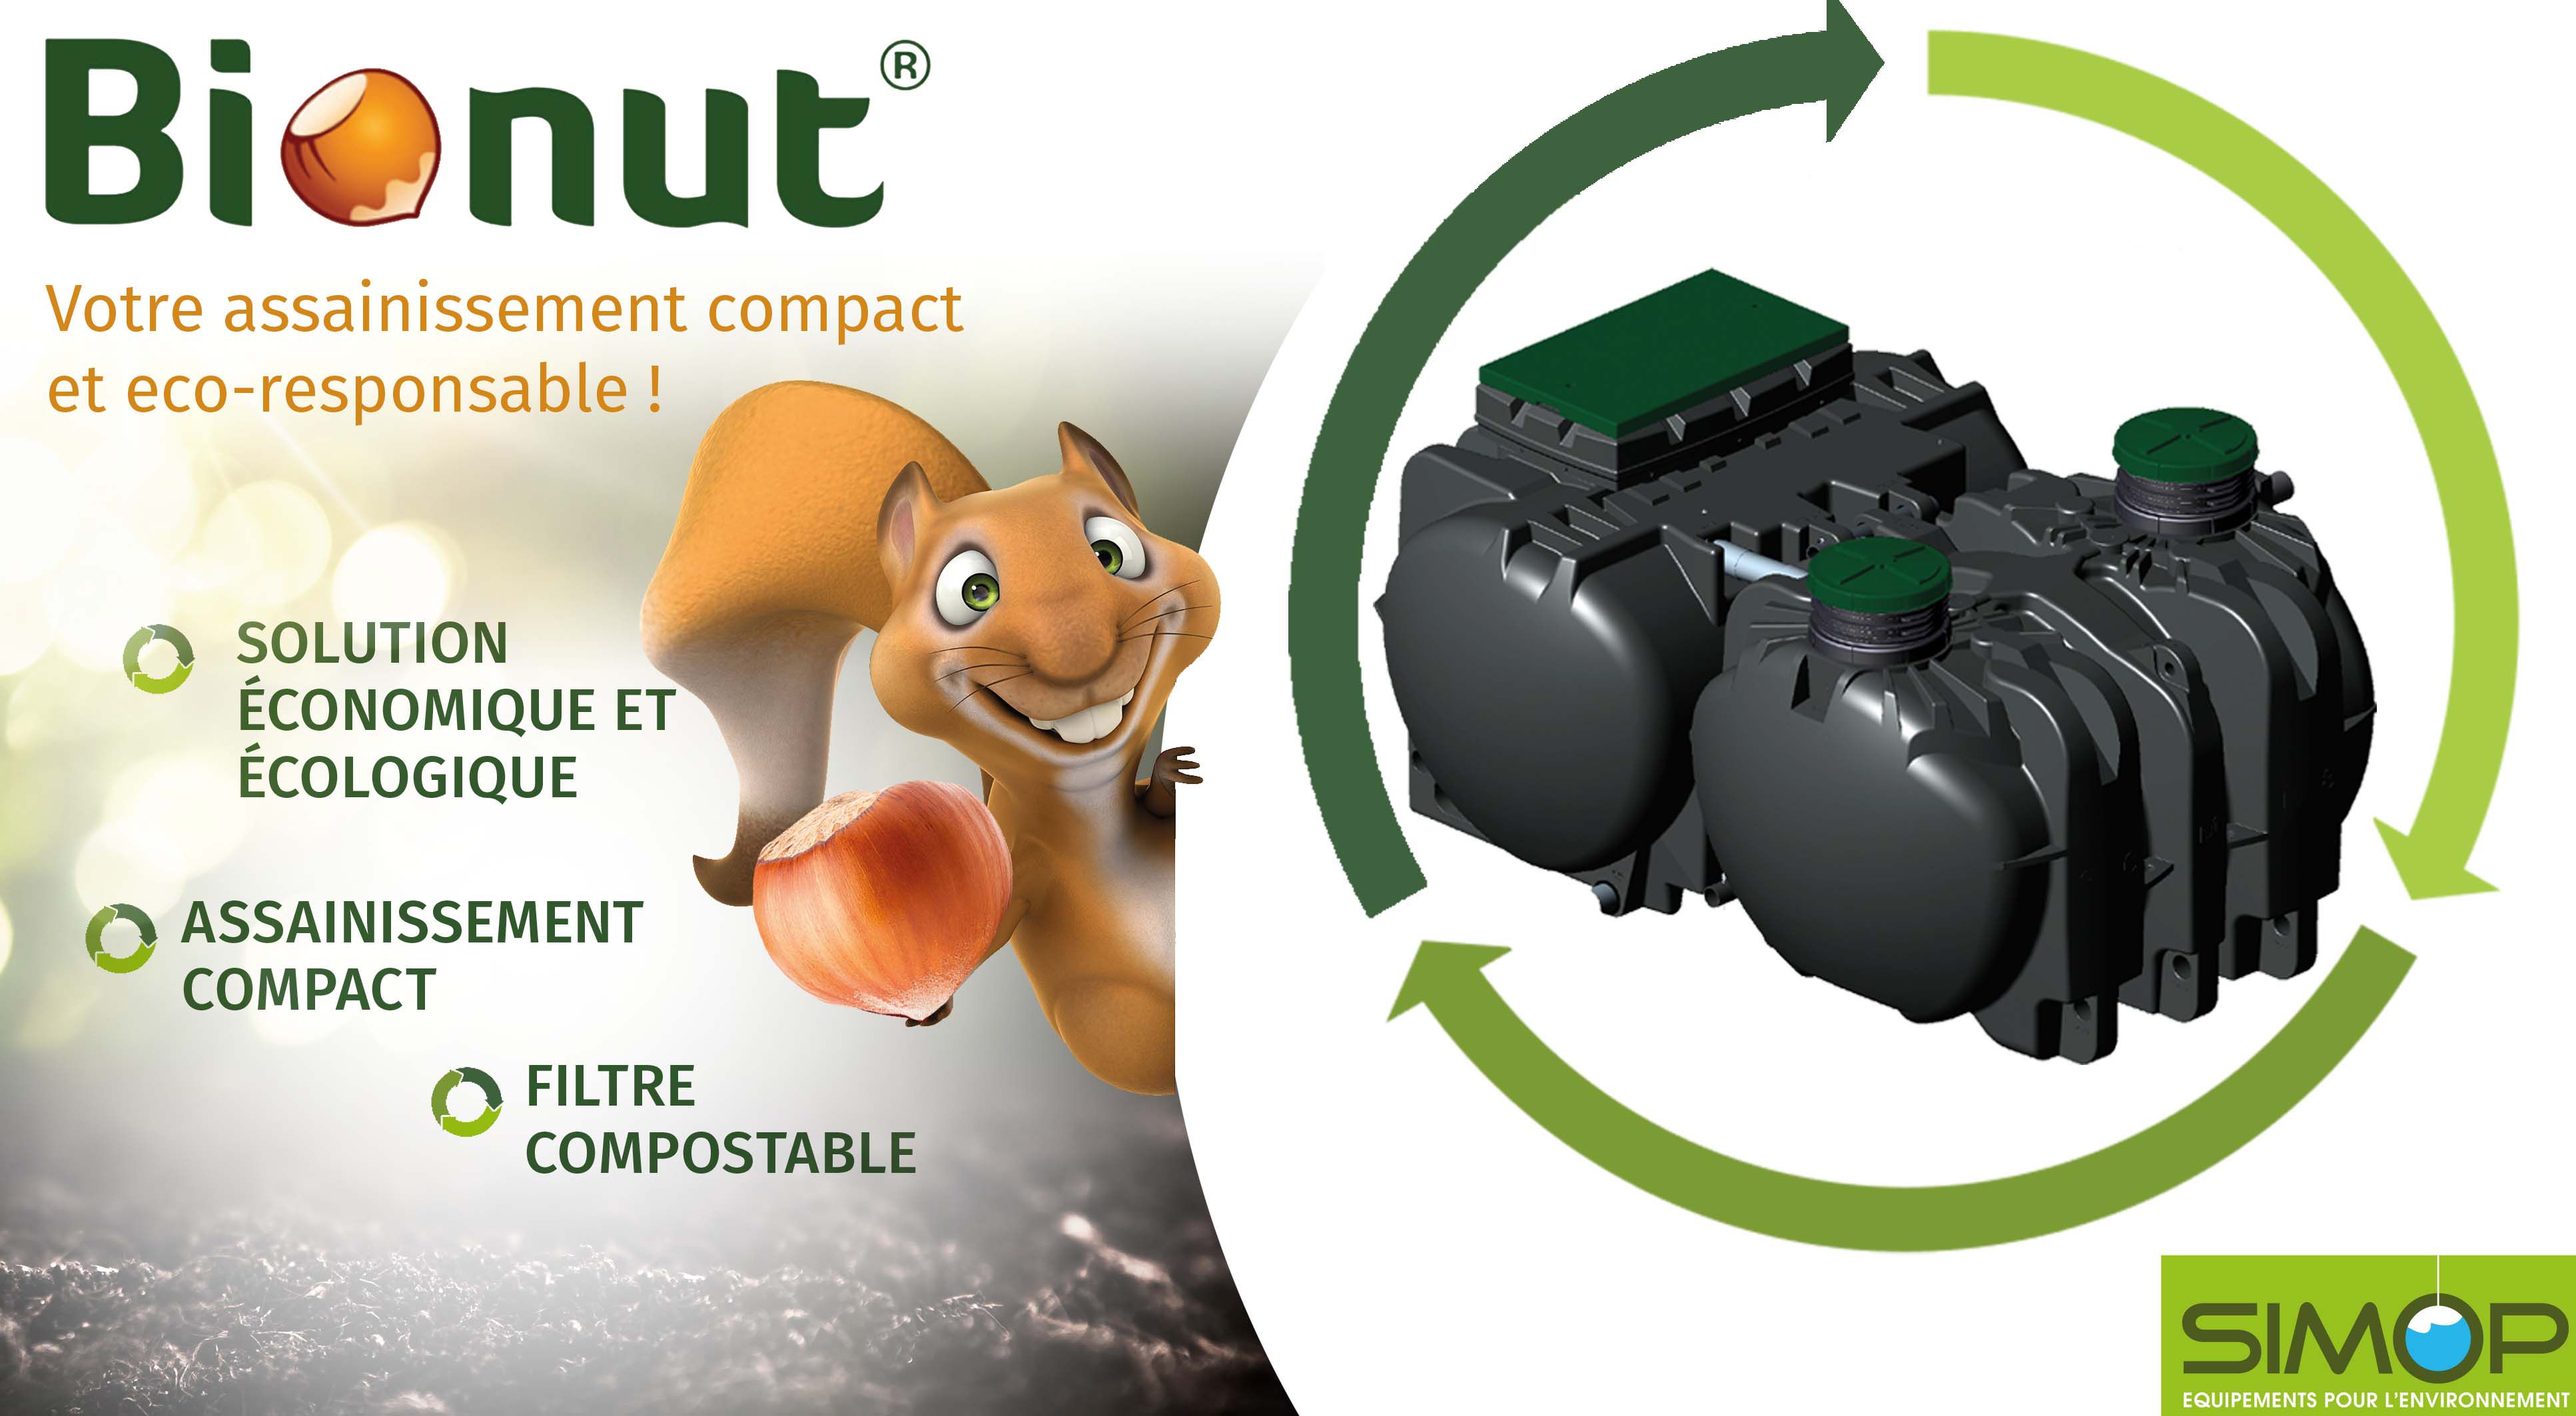 Bionut, un assainissement compact qui allie le recyclage et le compostage